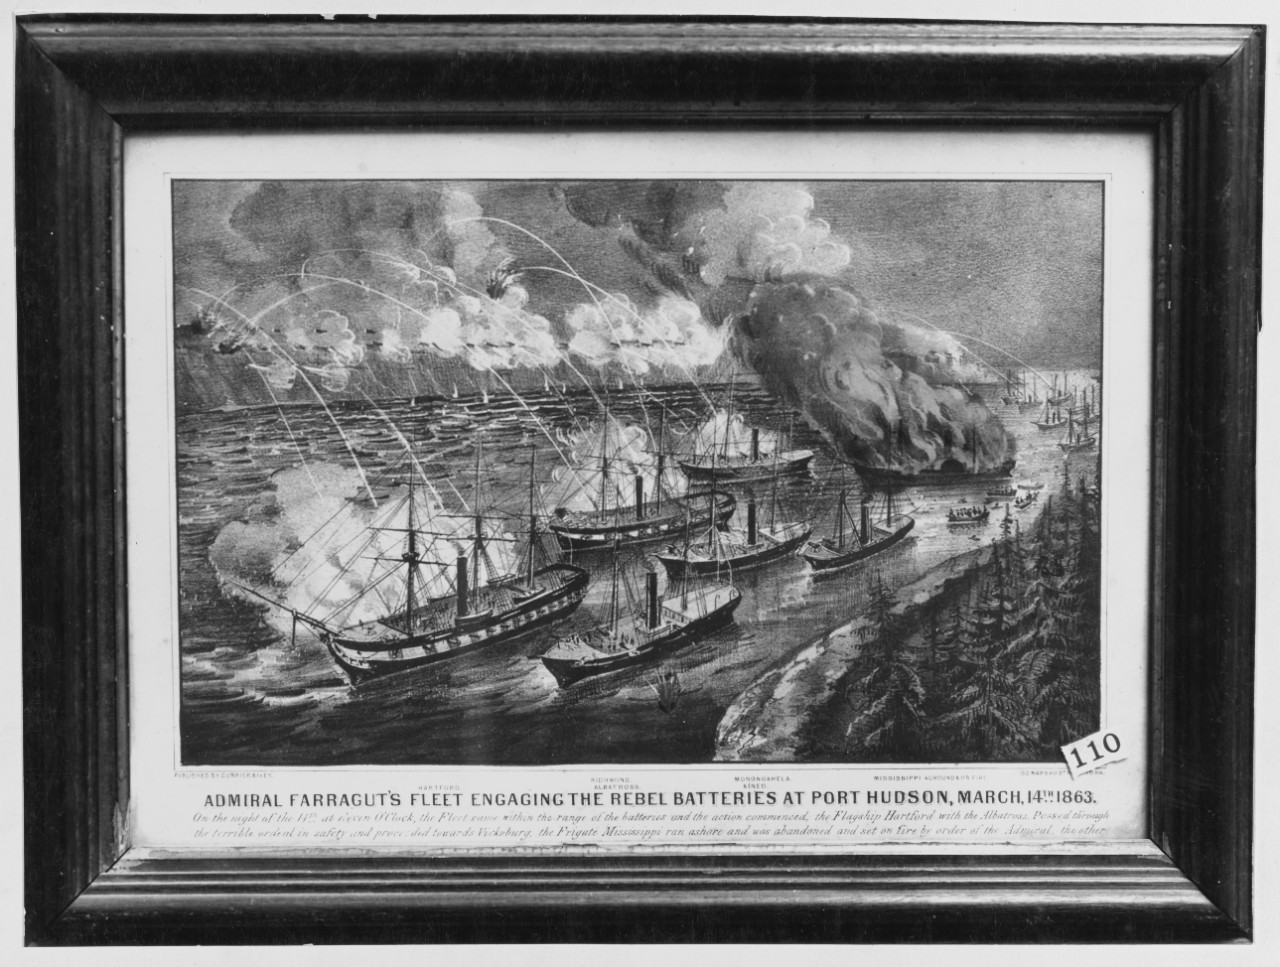 Port Hudson, 1863